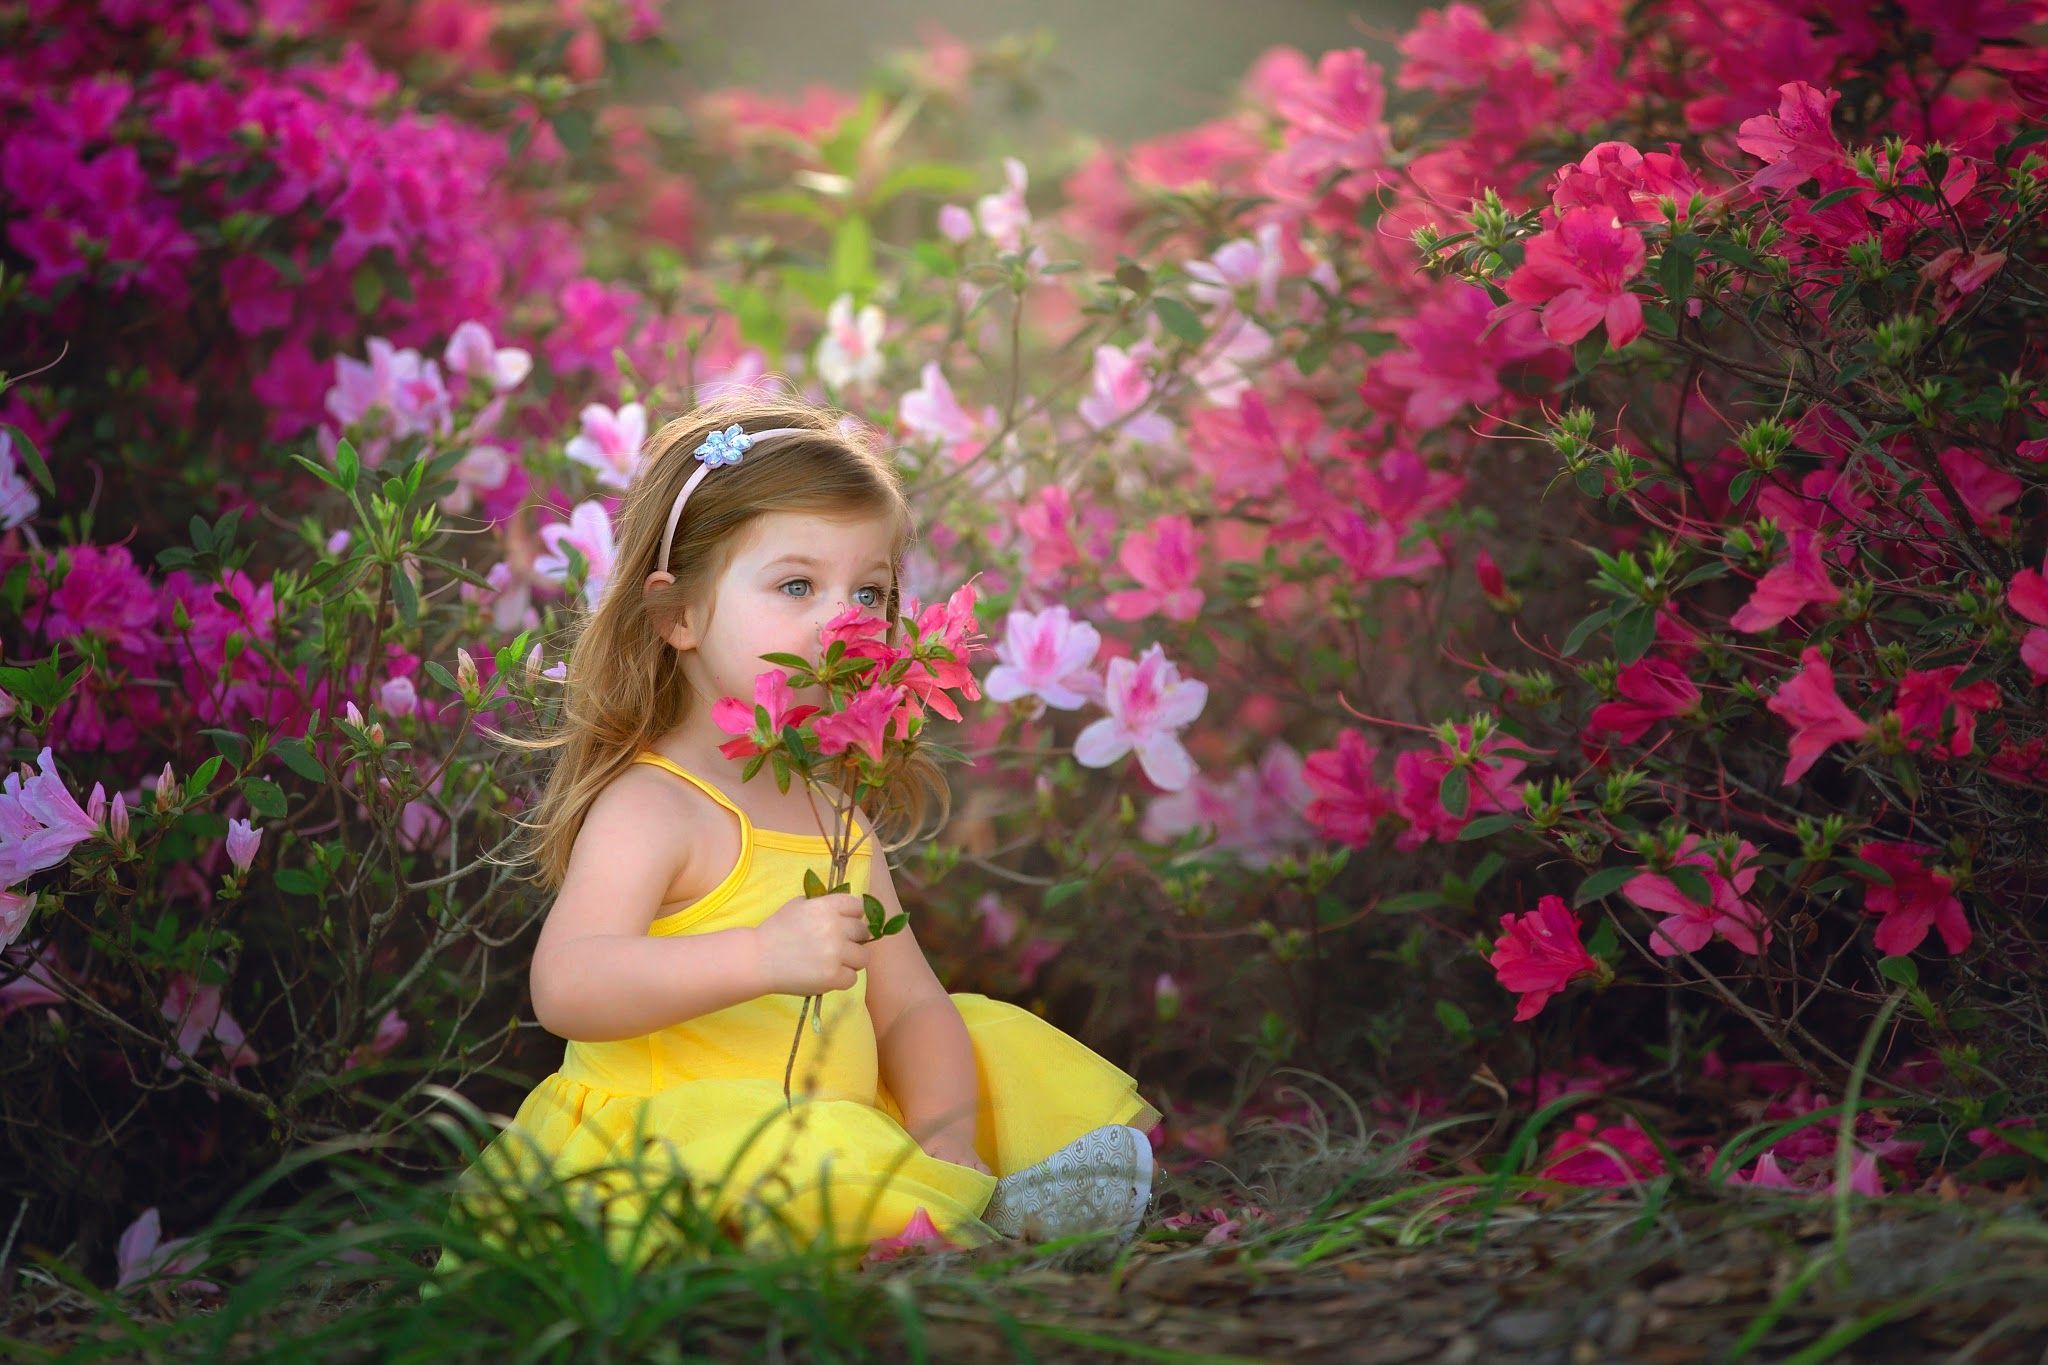 Cute little girl 1080P, 2K, 4K, 5K HD wallpapers free download | Wallpaper  Flare